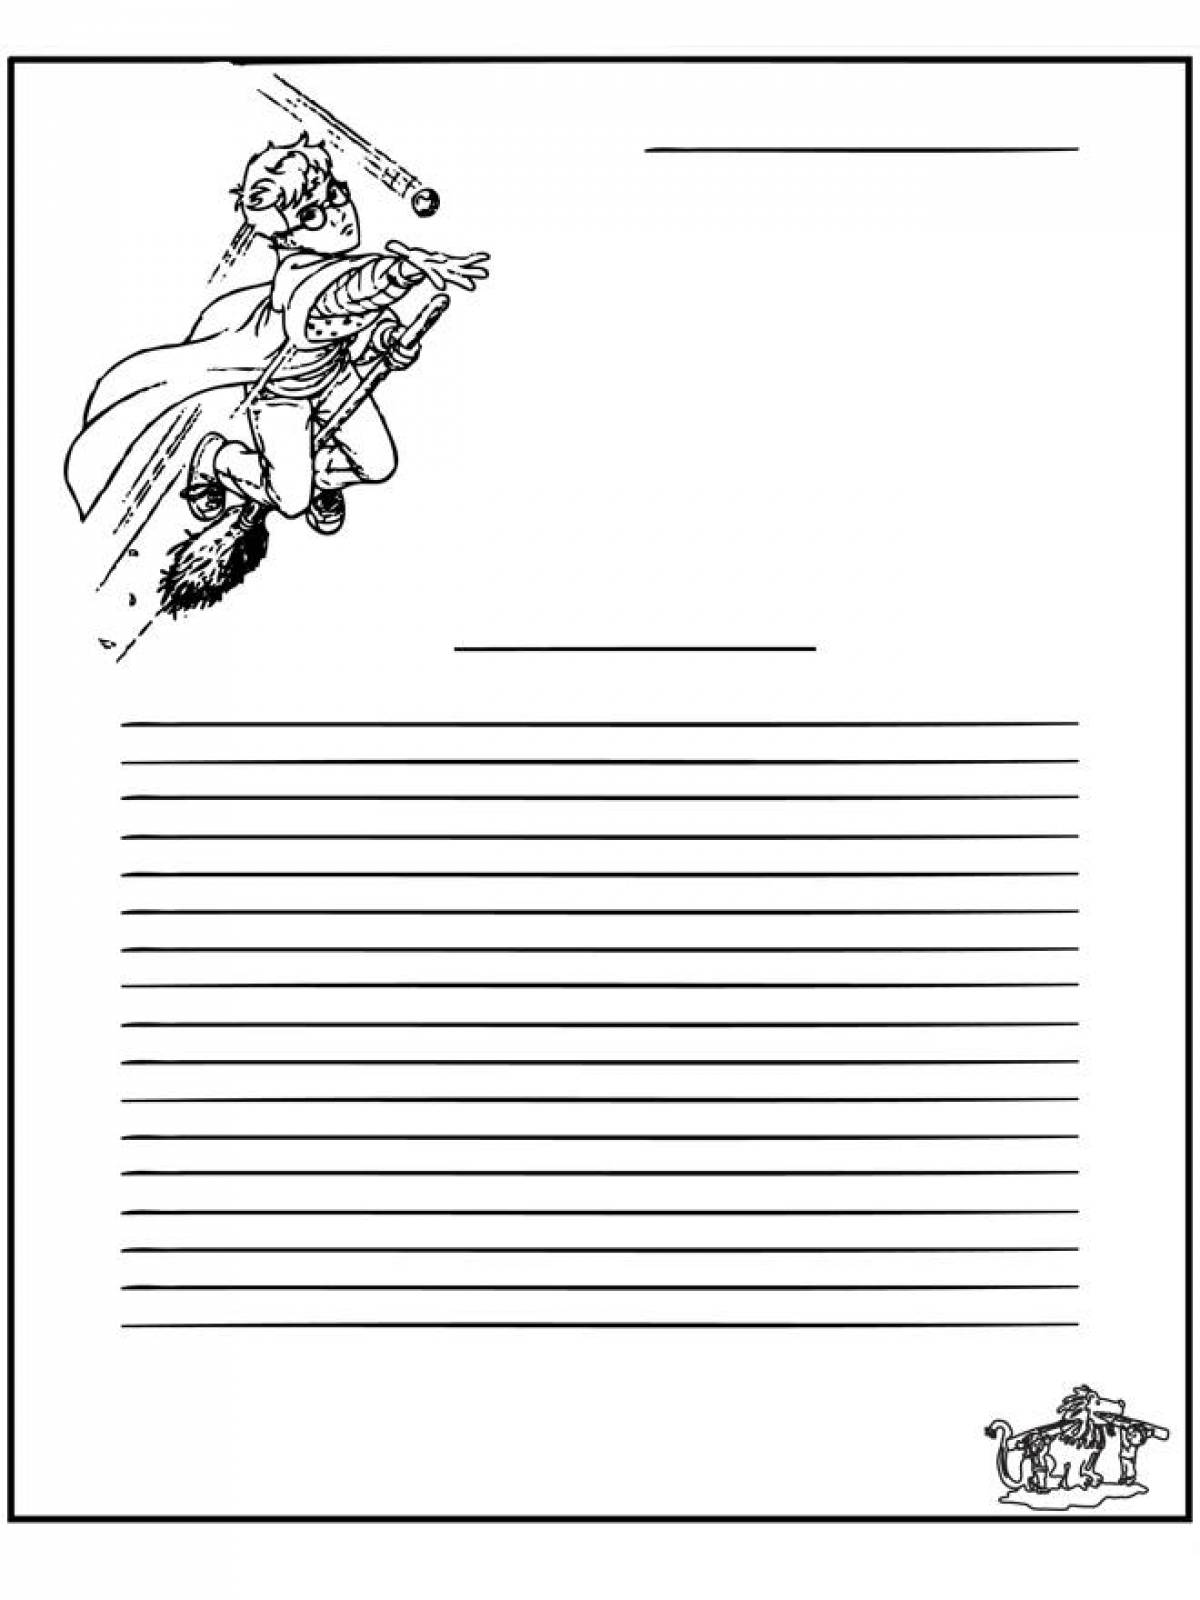 Раскраски Письмо солдату шаблон (27 шт.) - скачать или распечатать  бесплатно #3916